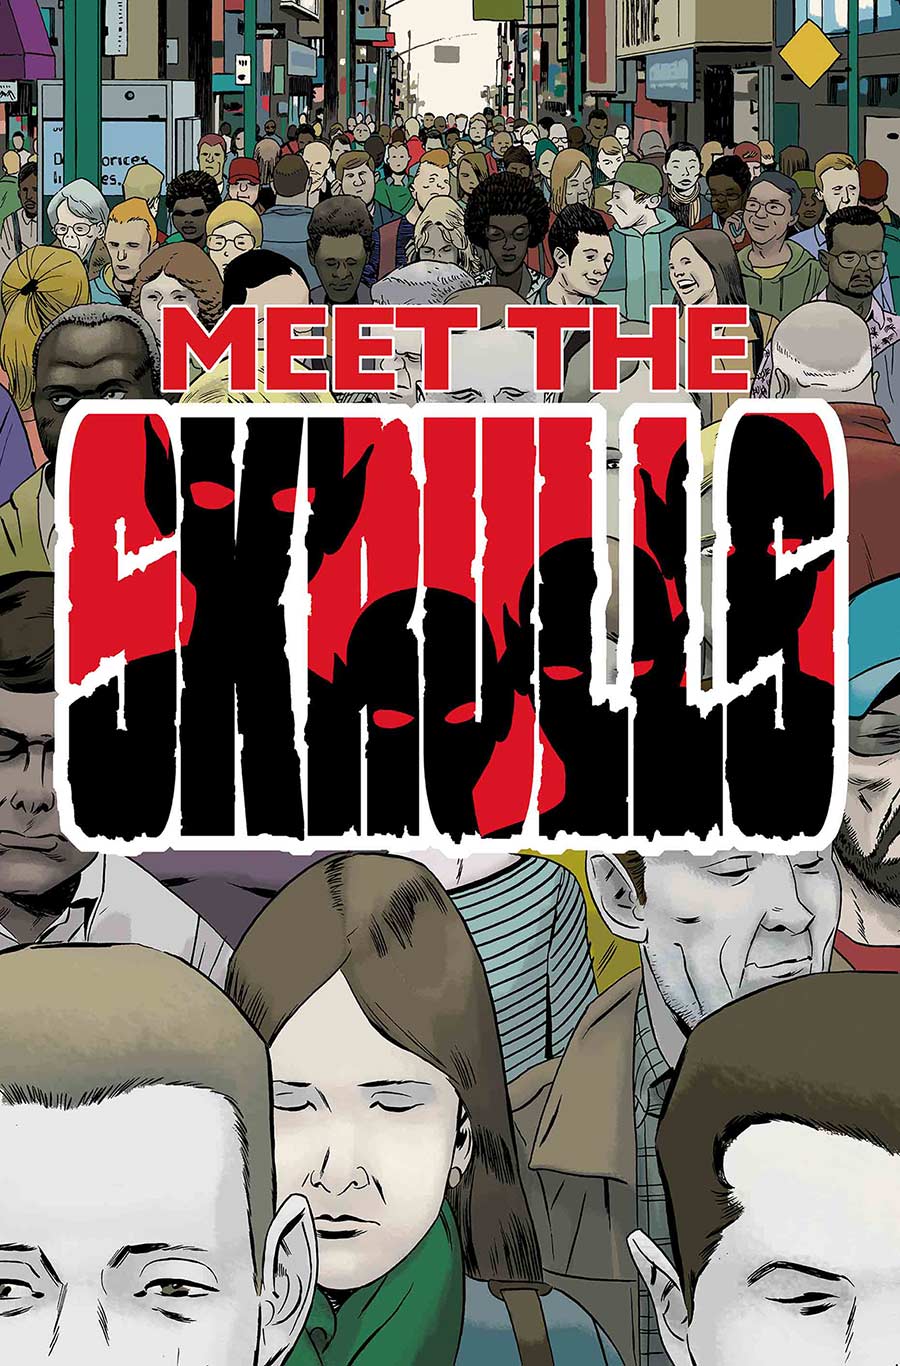 Meet The Skrulls